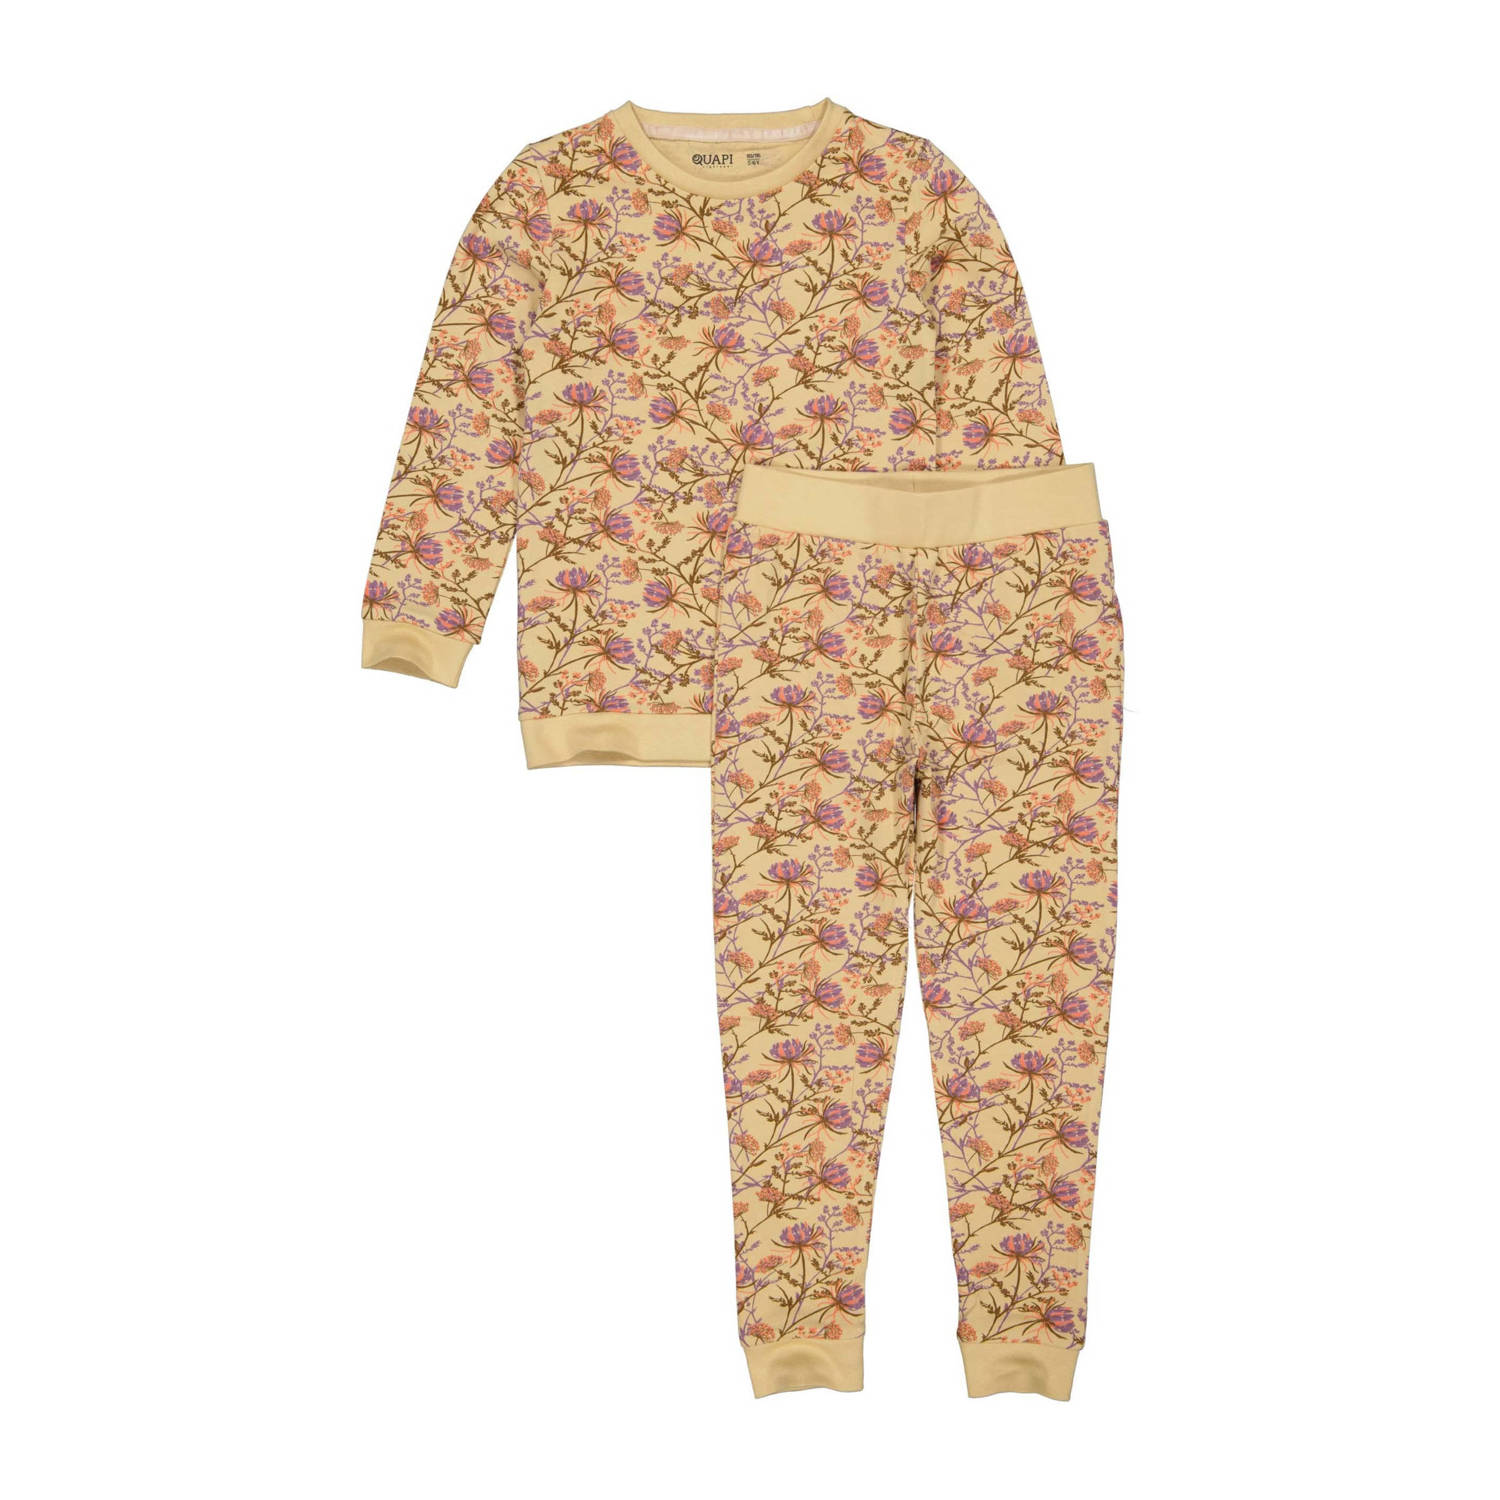 Quapi pyjama PUCK met all over print zand Beige Meisjes Stretchkatoen Ronde hals 110 116